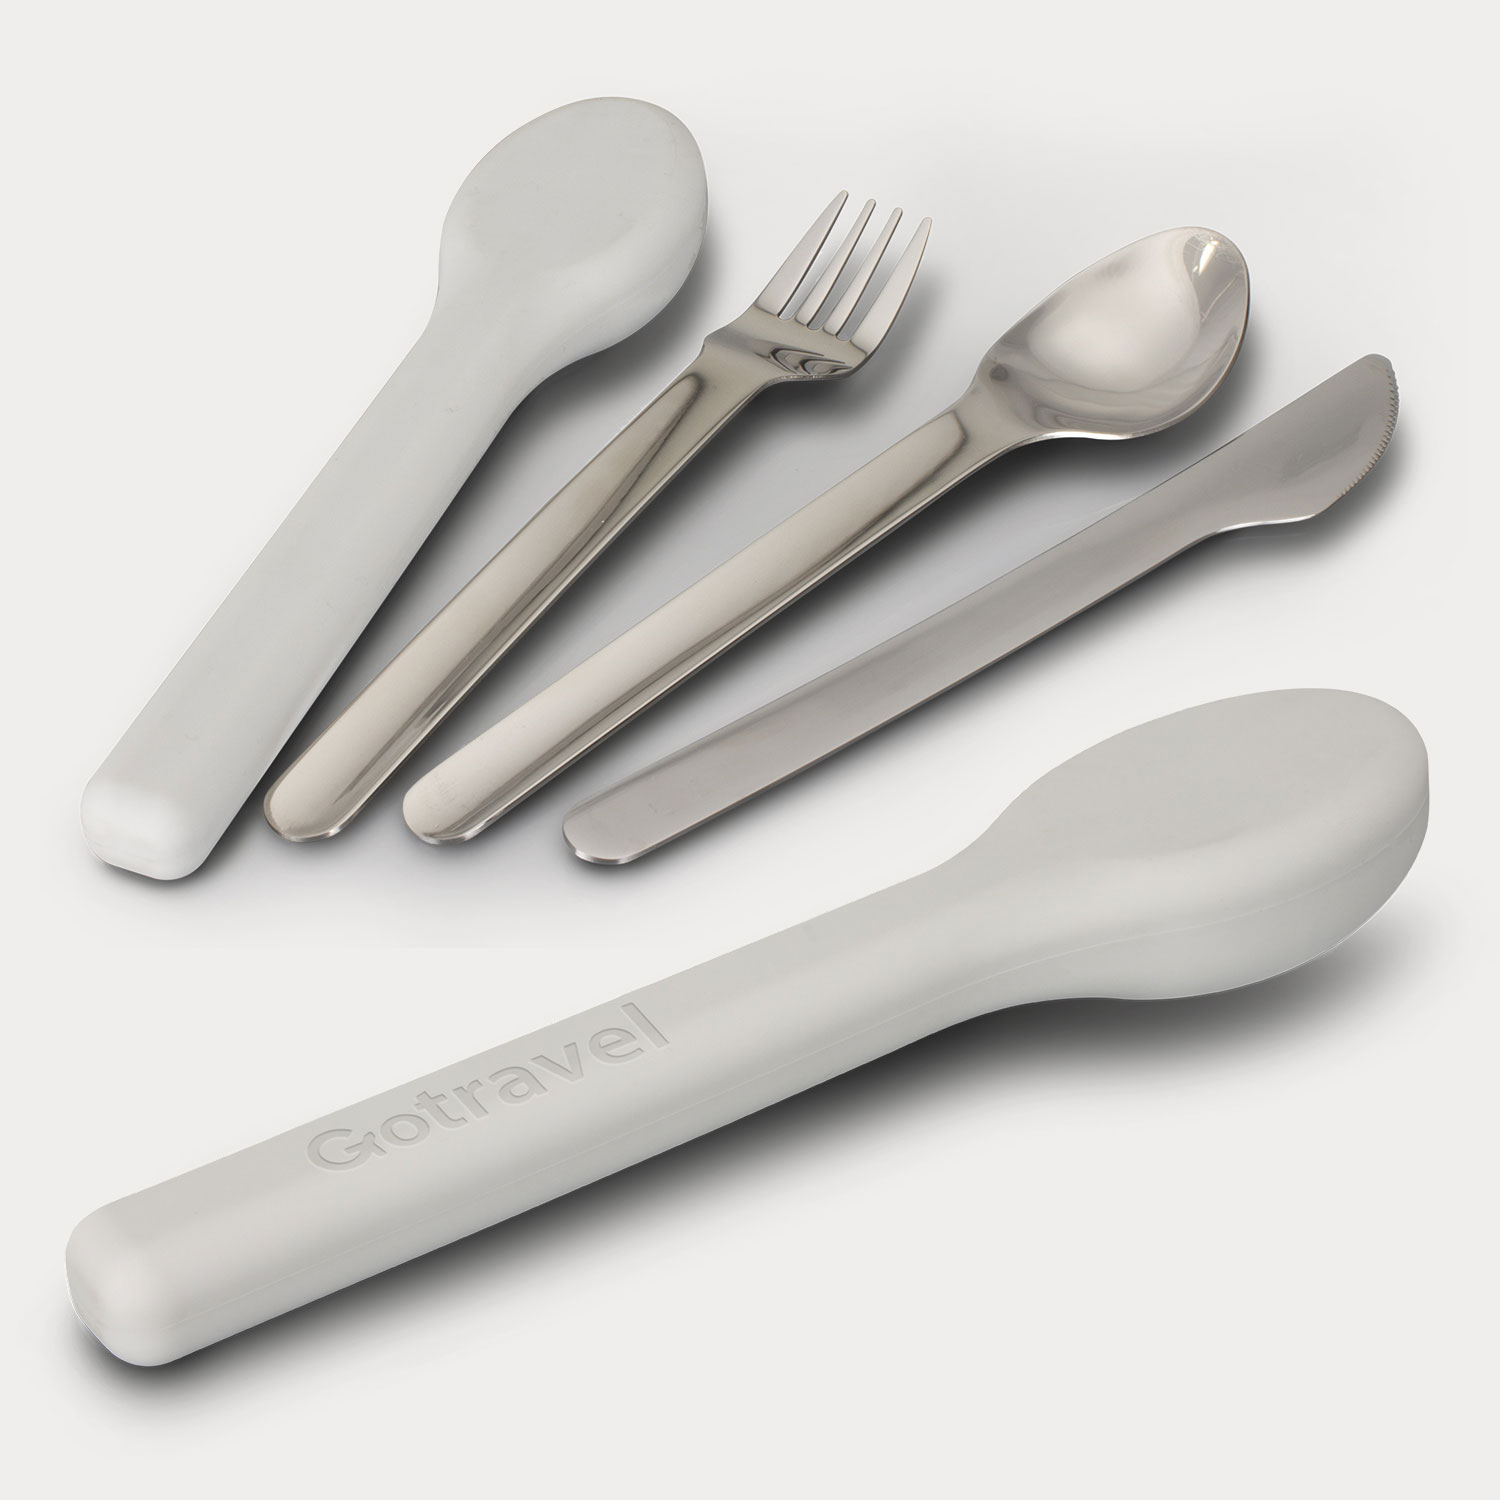 robins kitchen travel cutlery set